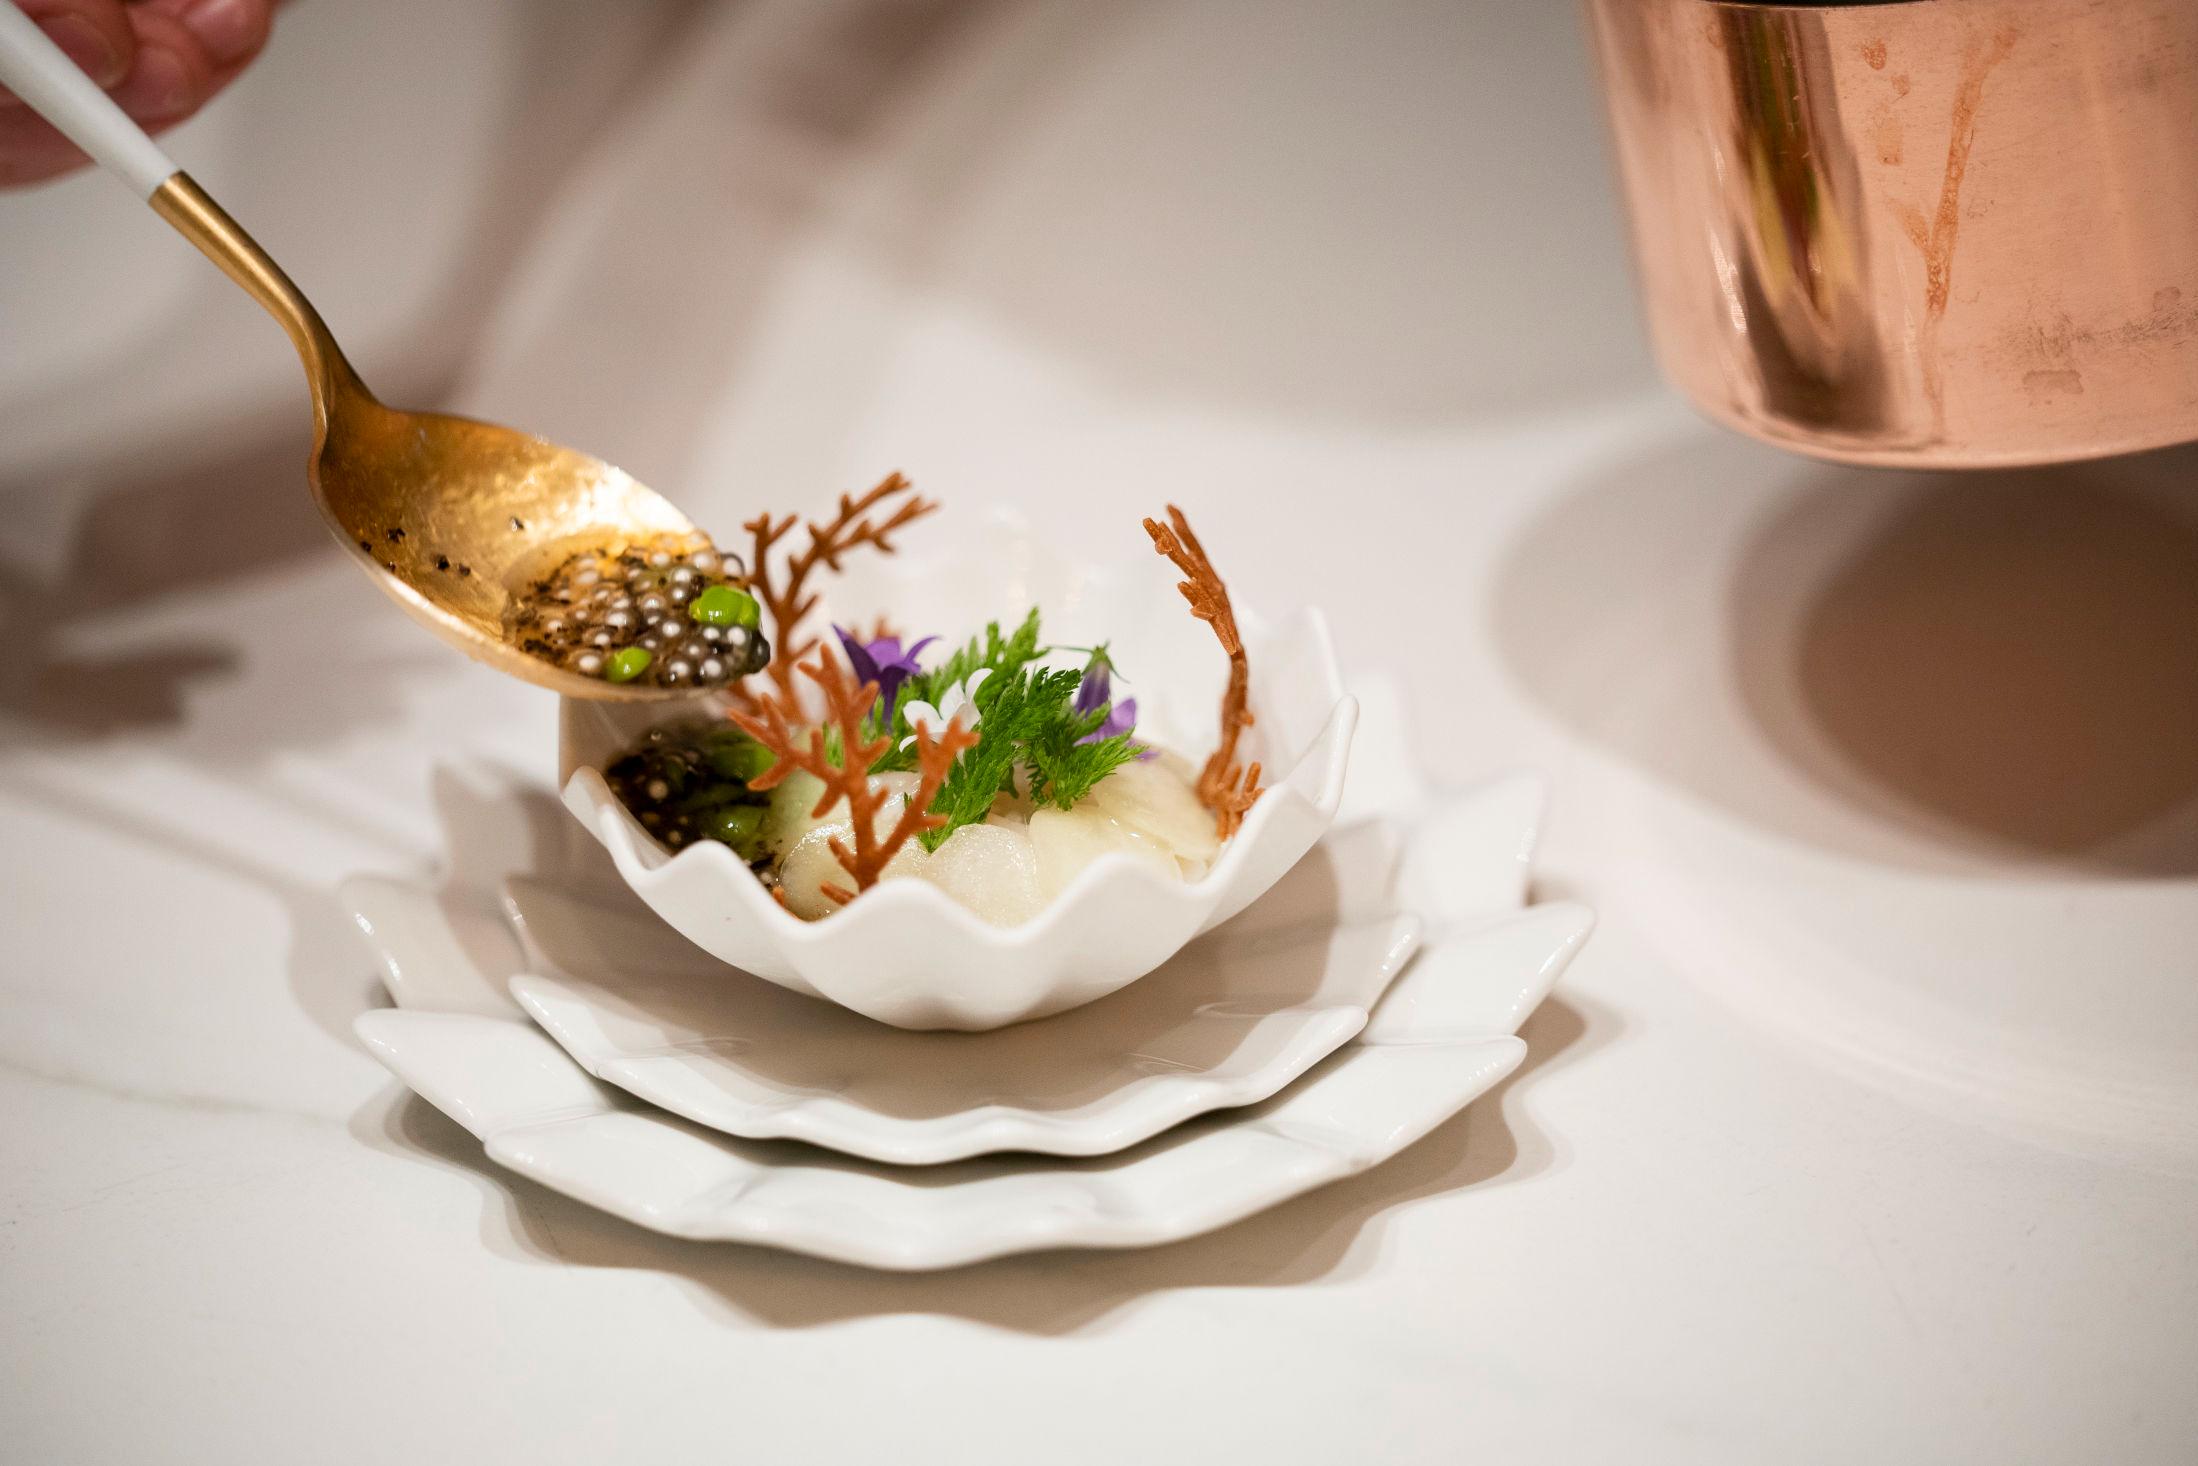 LEKKERT: Maten som blir servert ser elegant og lekker ut. Foto: Ole Martin Wold/VG